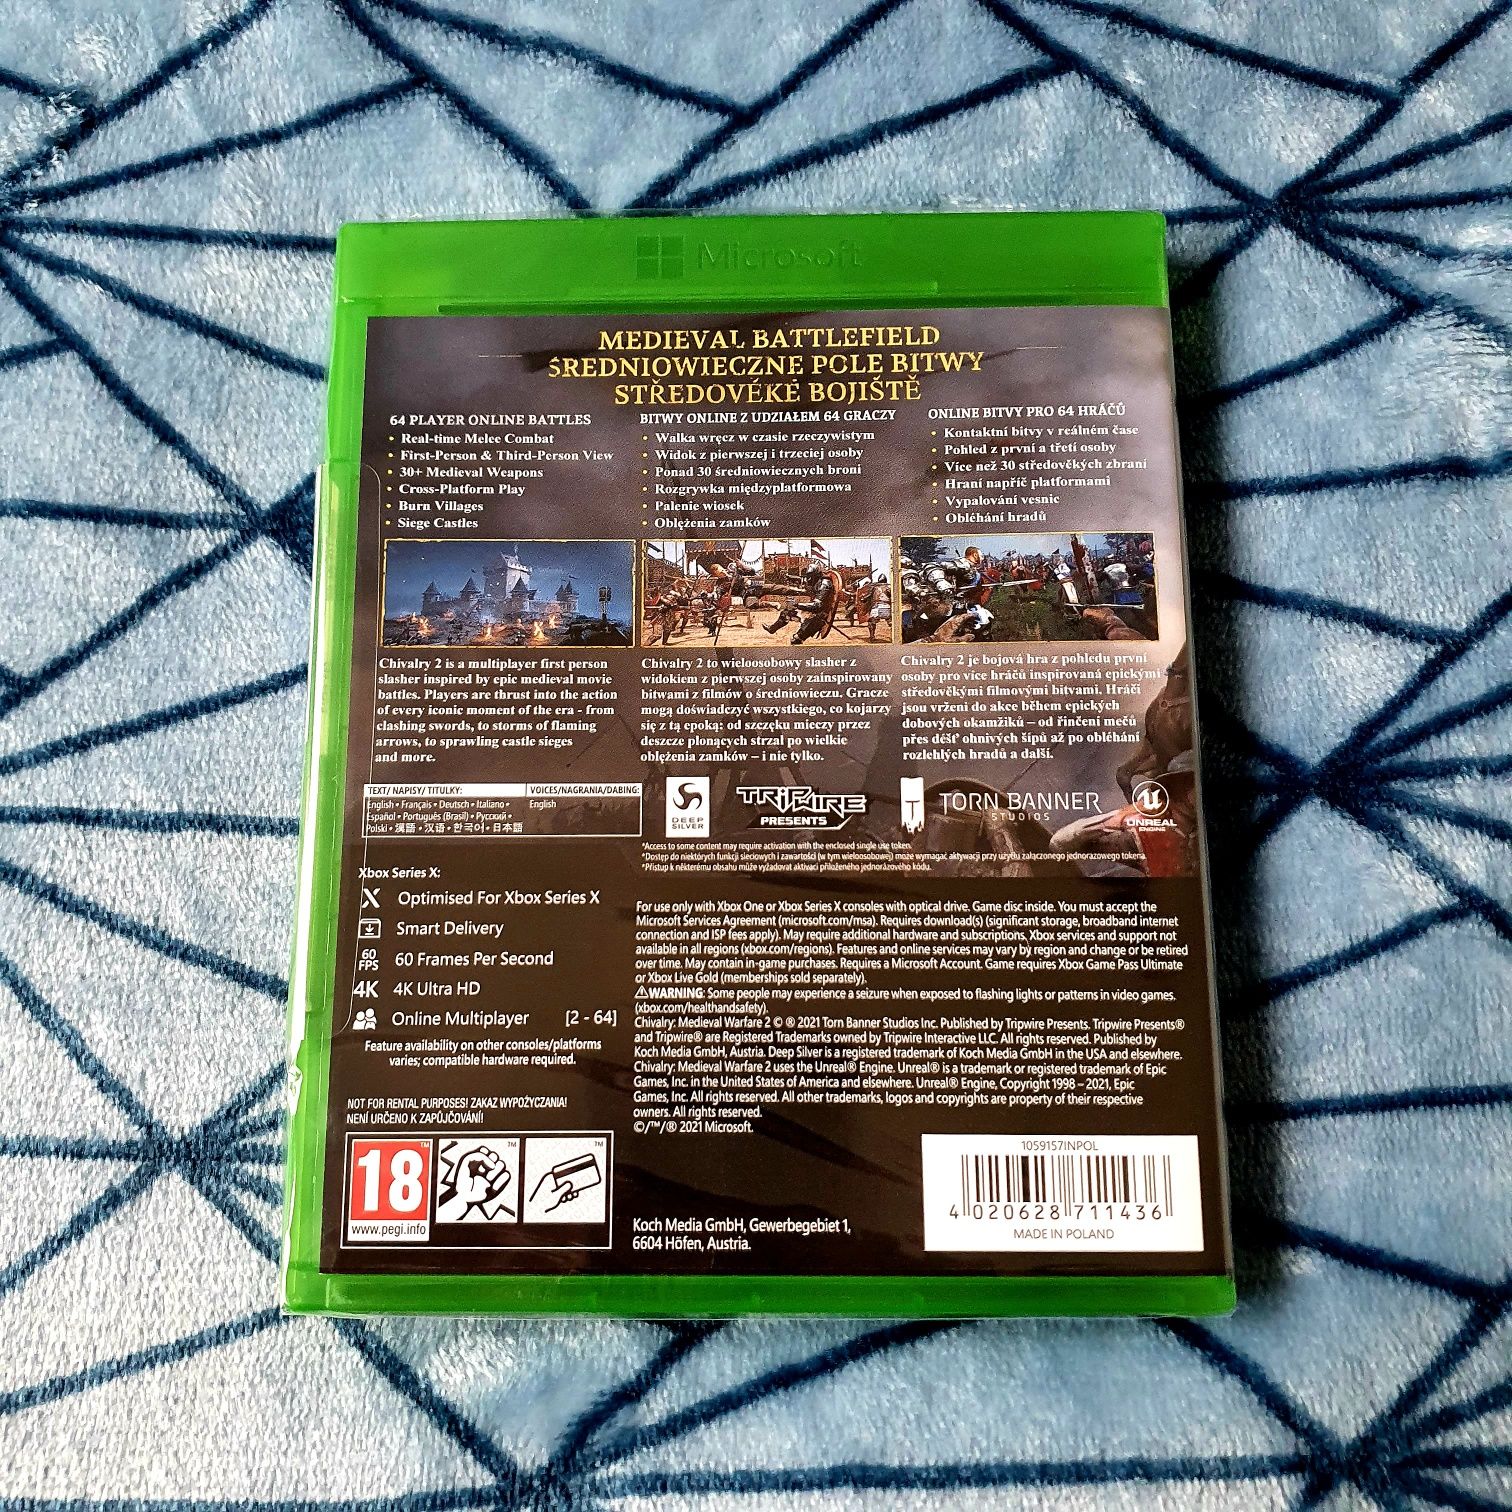 Nowa Gra Chivalry II 2 Day One Edition Xbox One Series X PL Polska